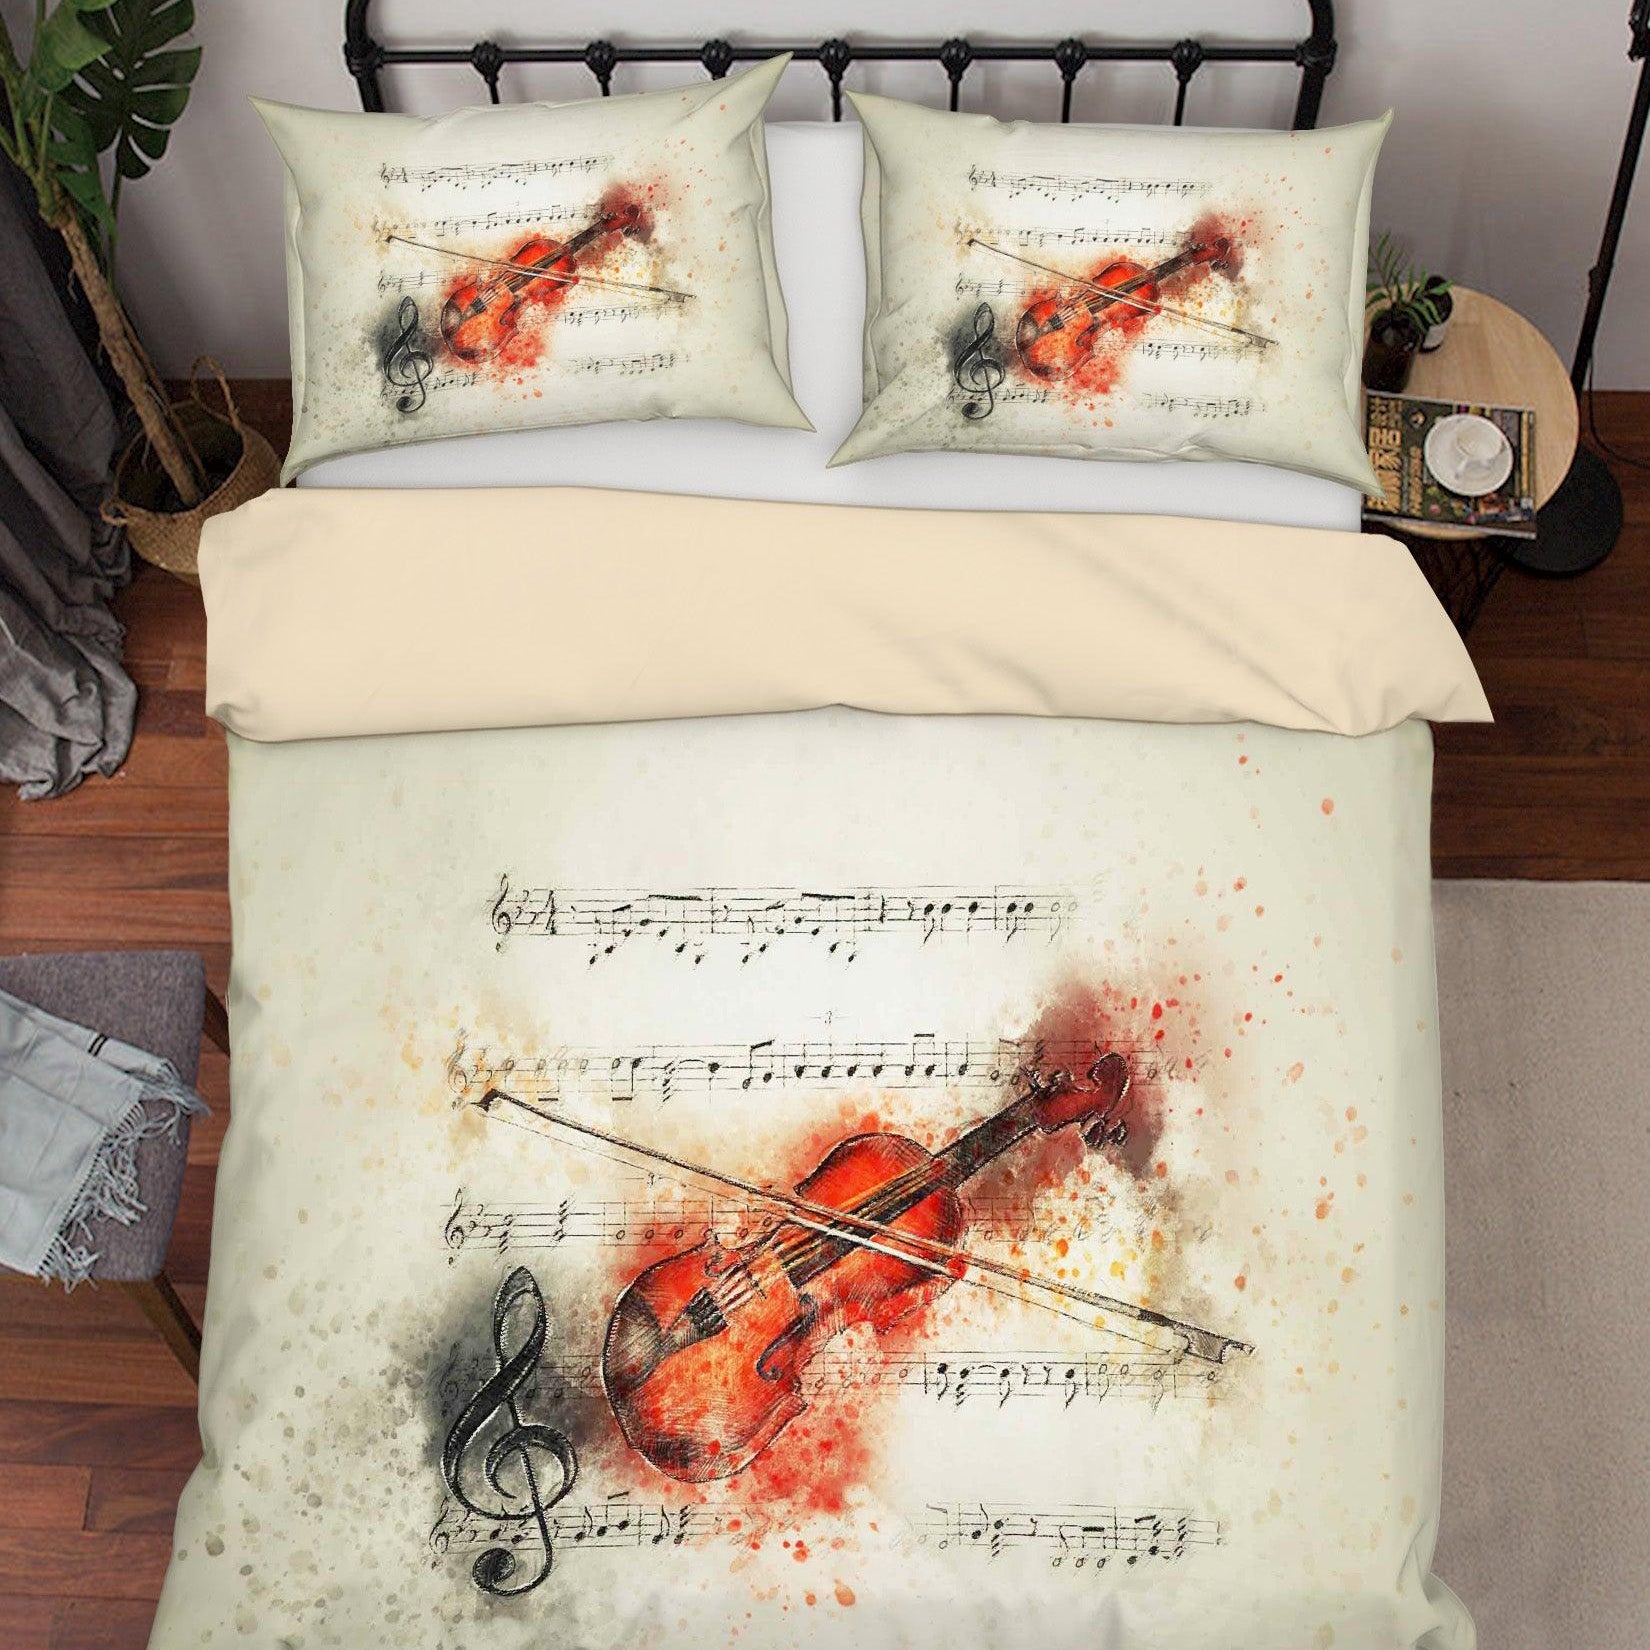 3D Violin Score Quilt Cover Set Bedding Set Duvet Cover Pillowcases A170 LQH- Jess Art Decoration